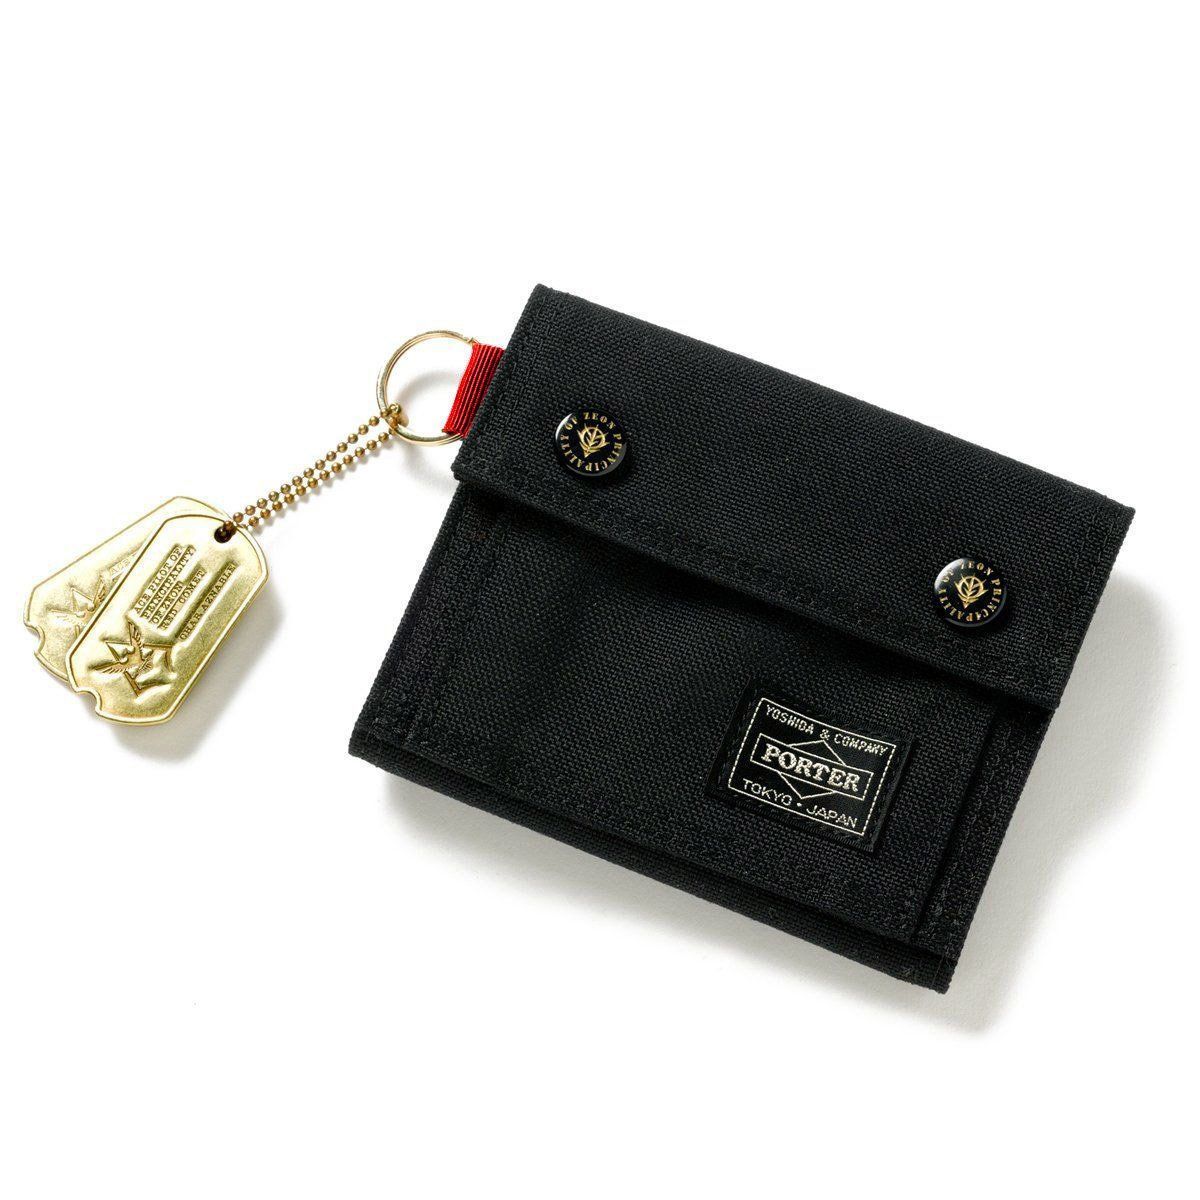 通常使用による使用感以外はPORTER x STRICT-G コラボ シャア専用 ジオン軍 ガンダム 財布